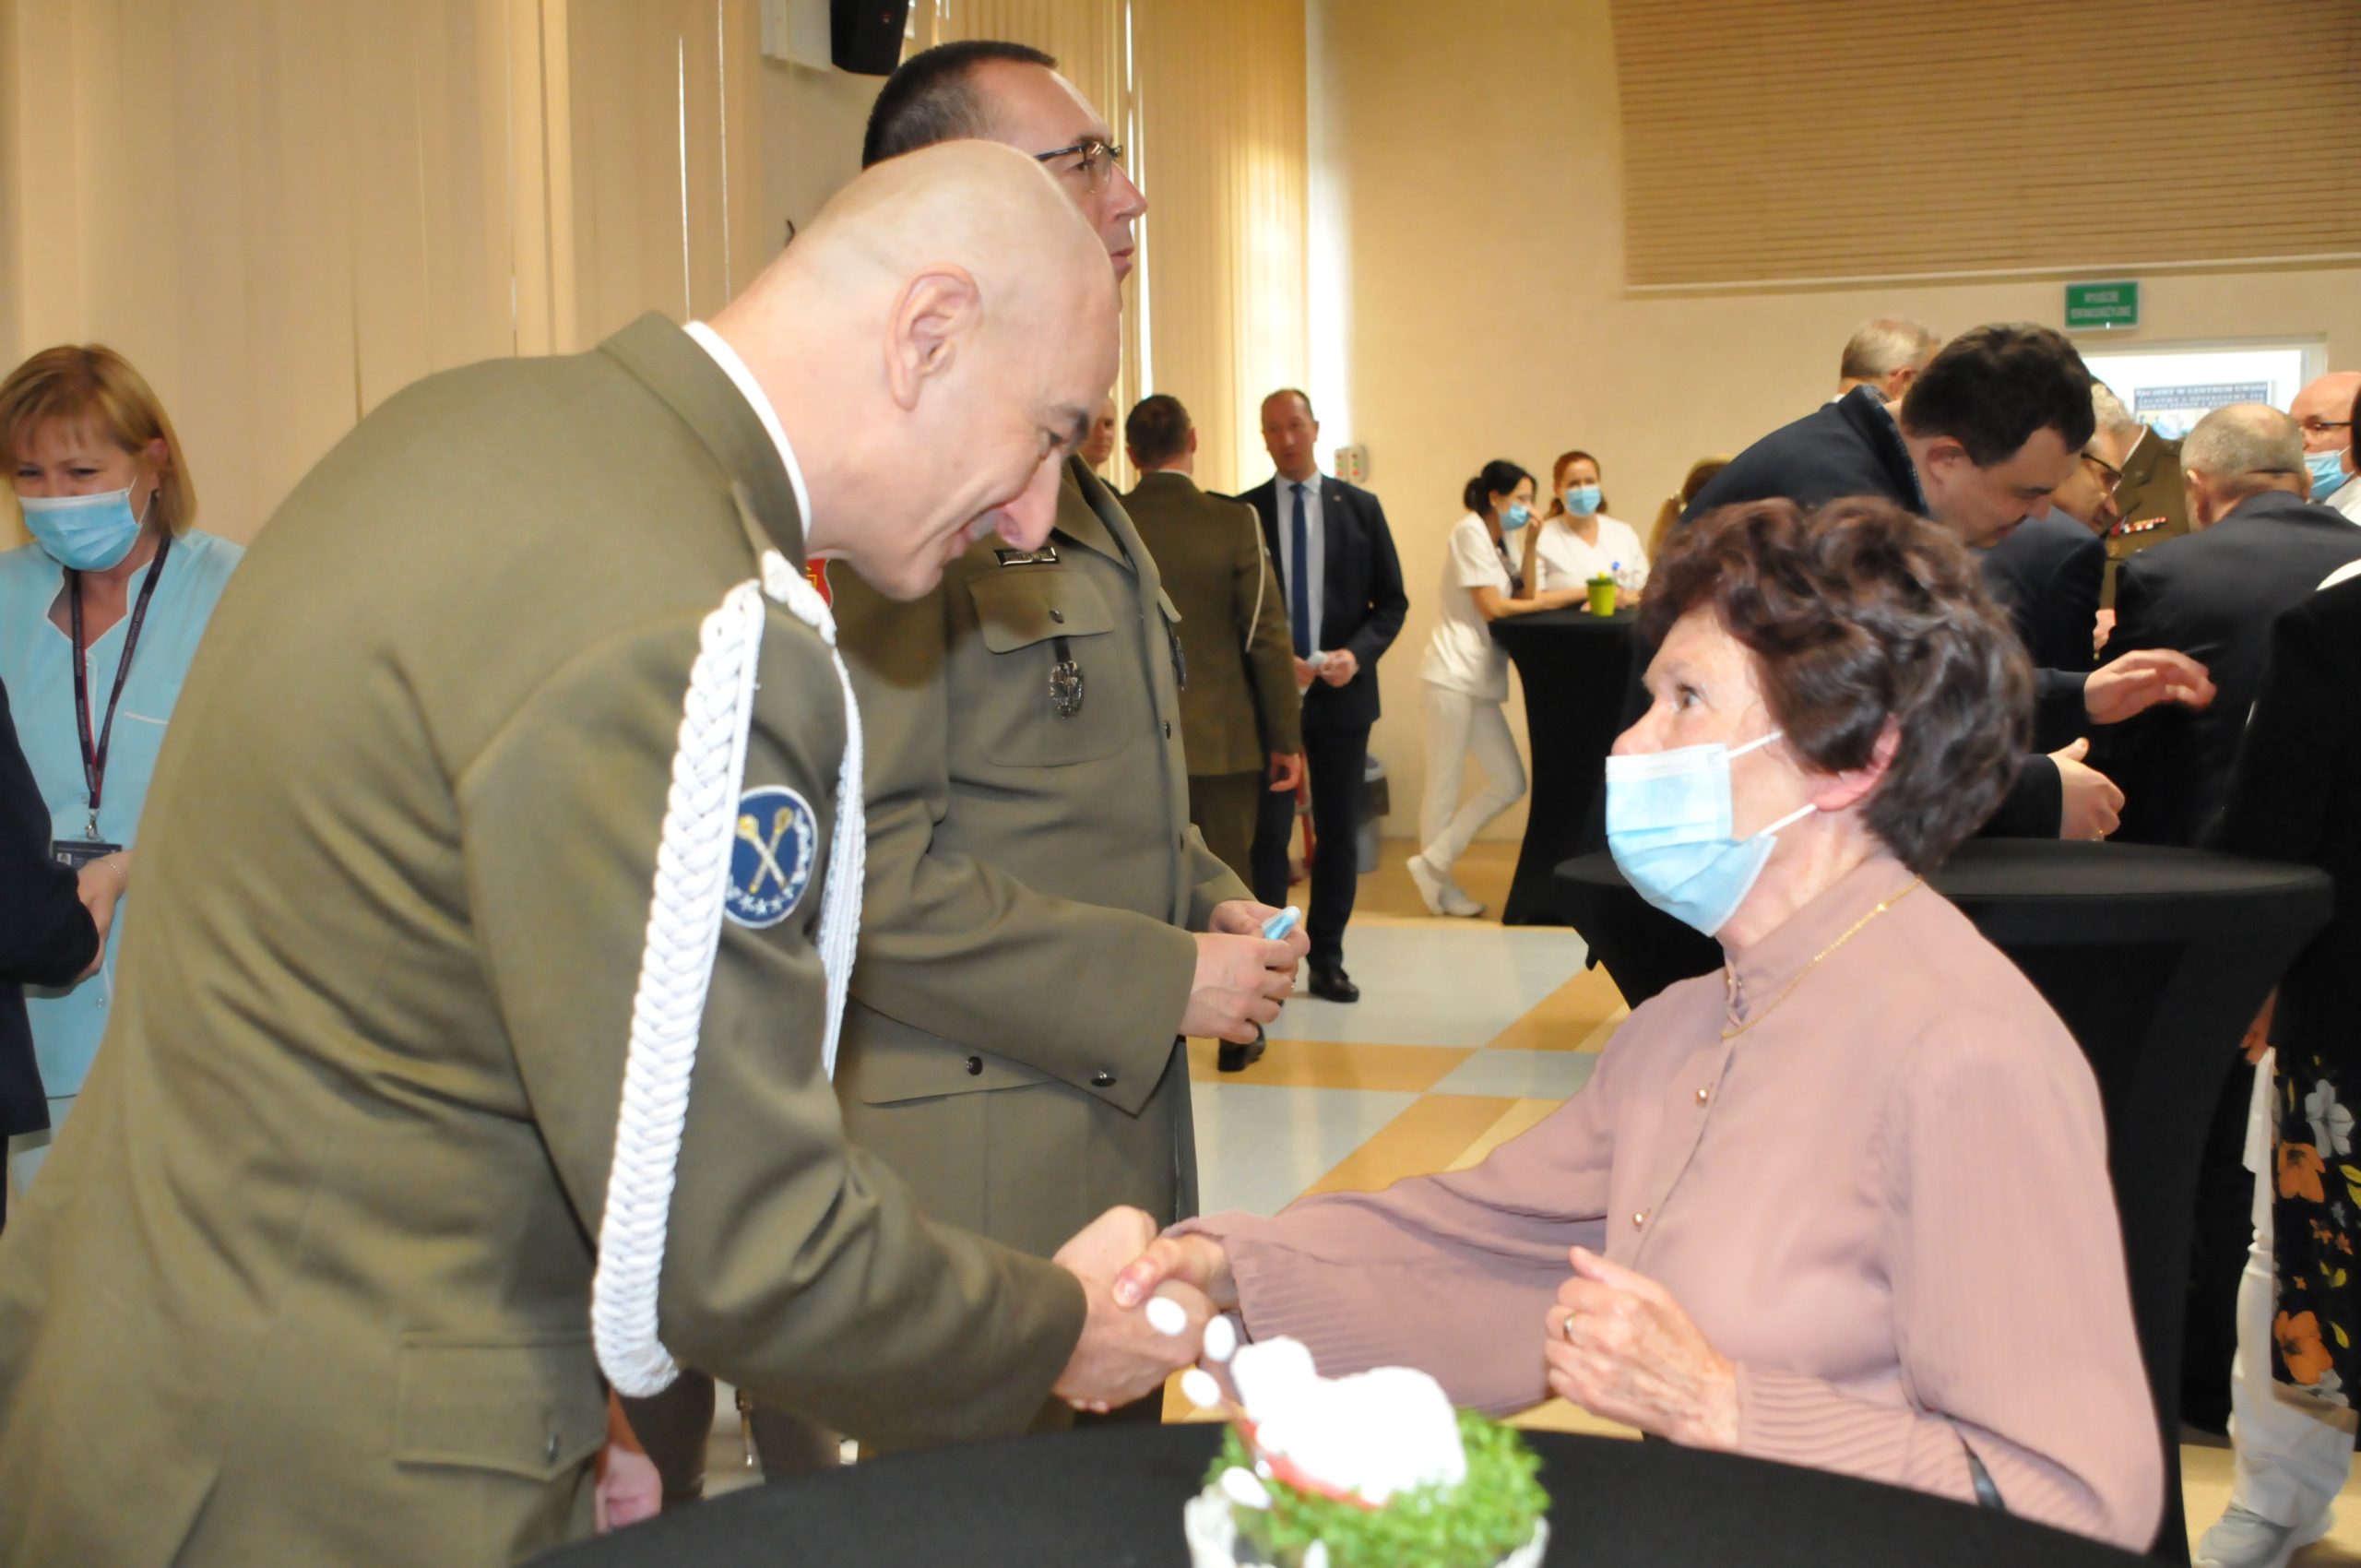 Spotkanie wielkanocne w Wojskowym Instytucie Medycznym